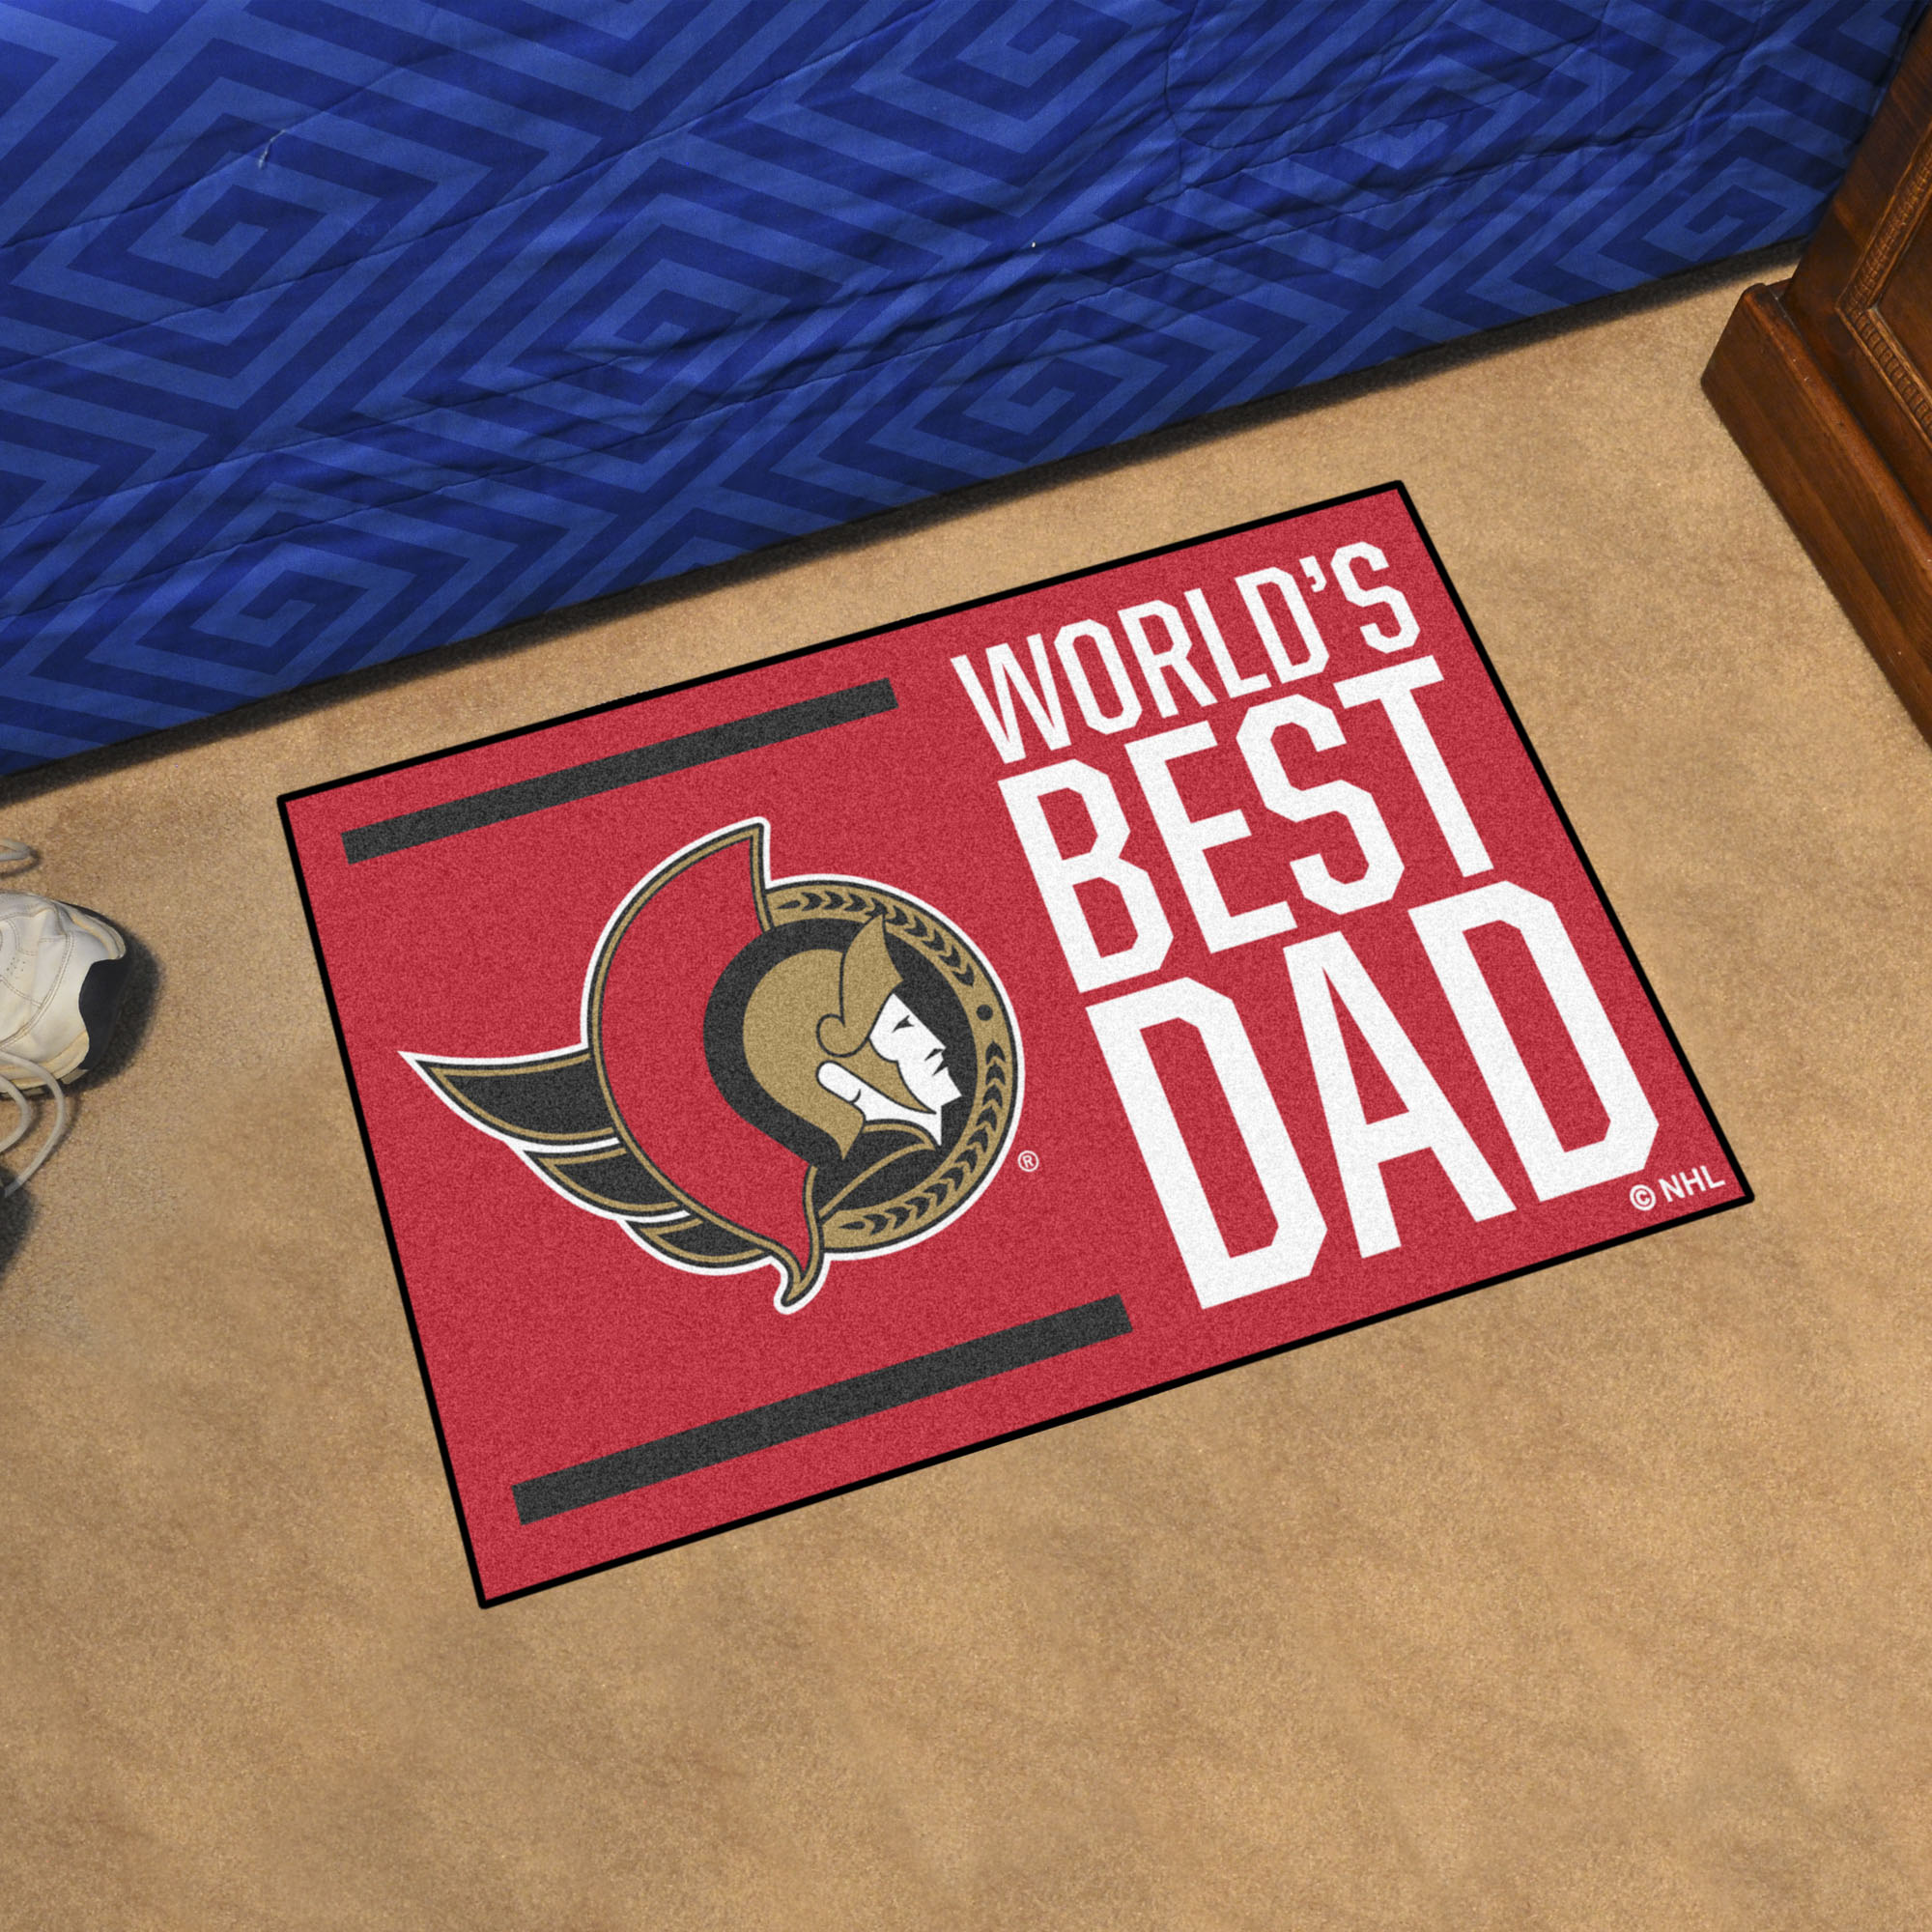 Ottawa Senators Senators World's Best Dad Starter Doormat - 19x30